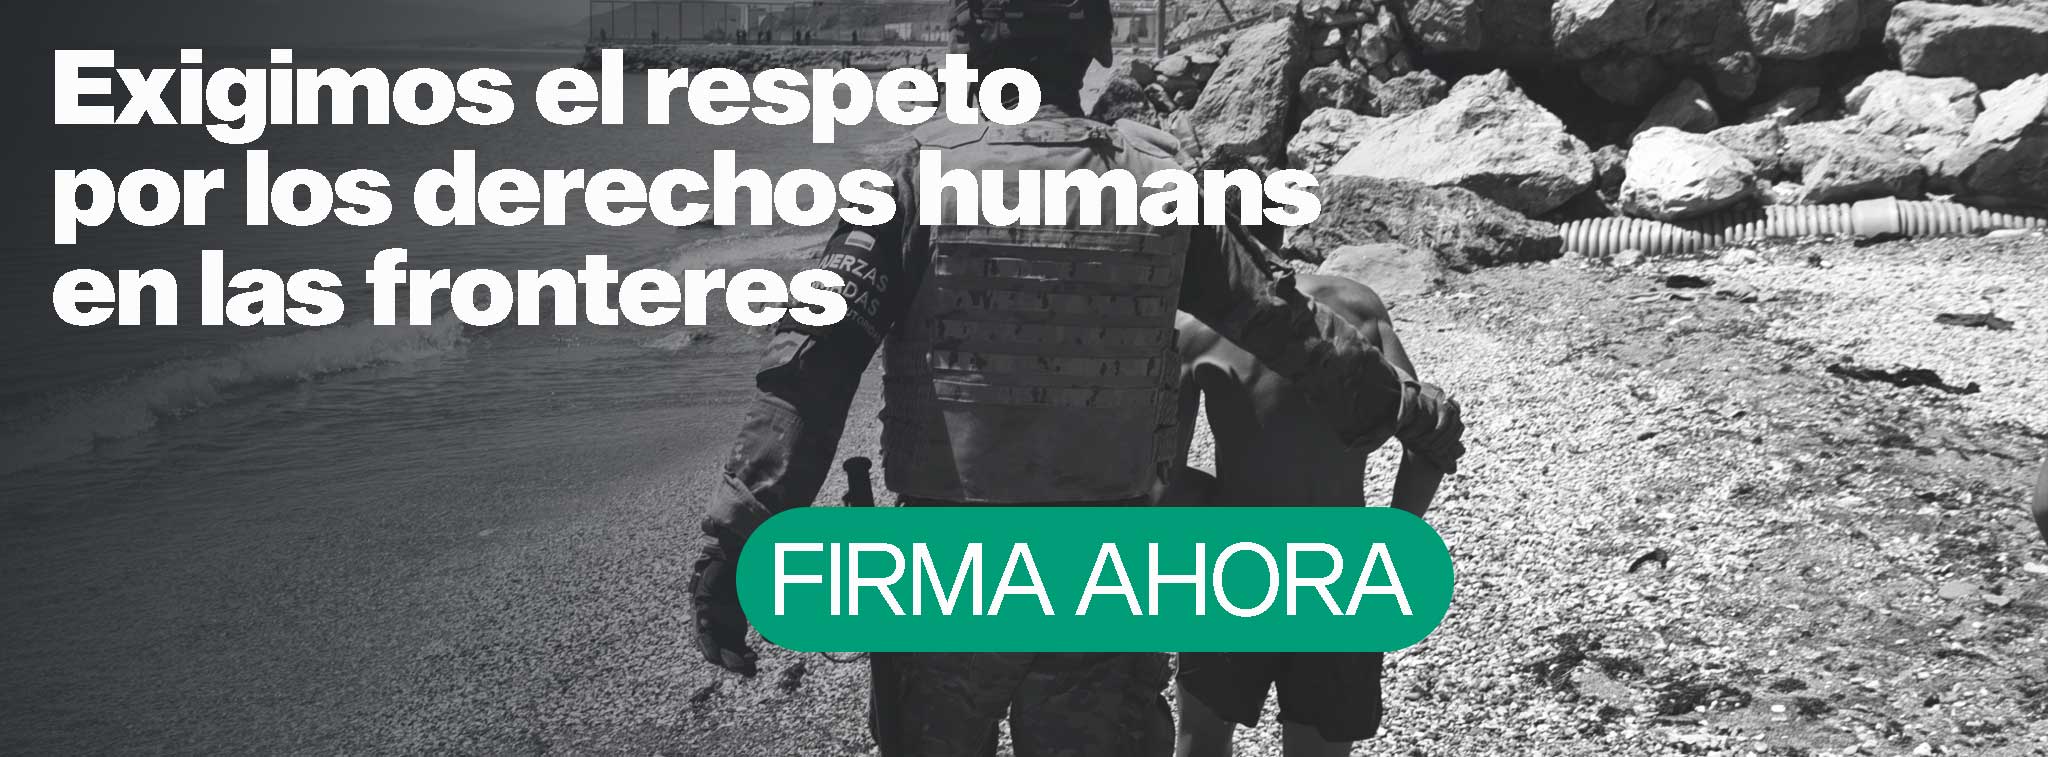 Exigimos el respeto por los derechos humans en las fronteres